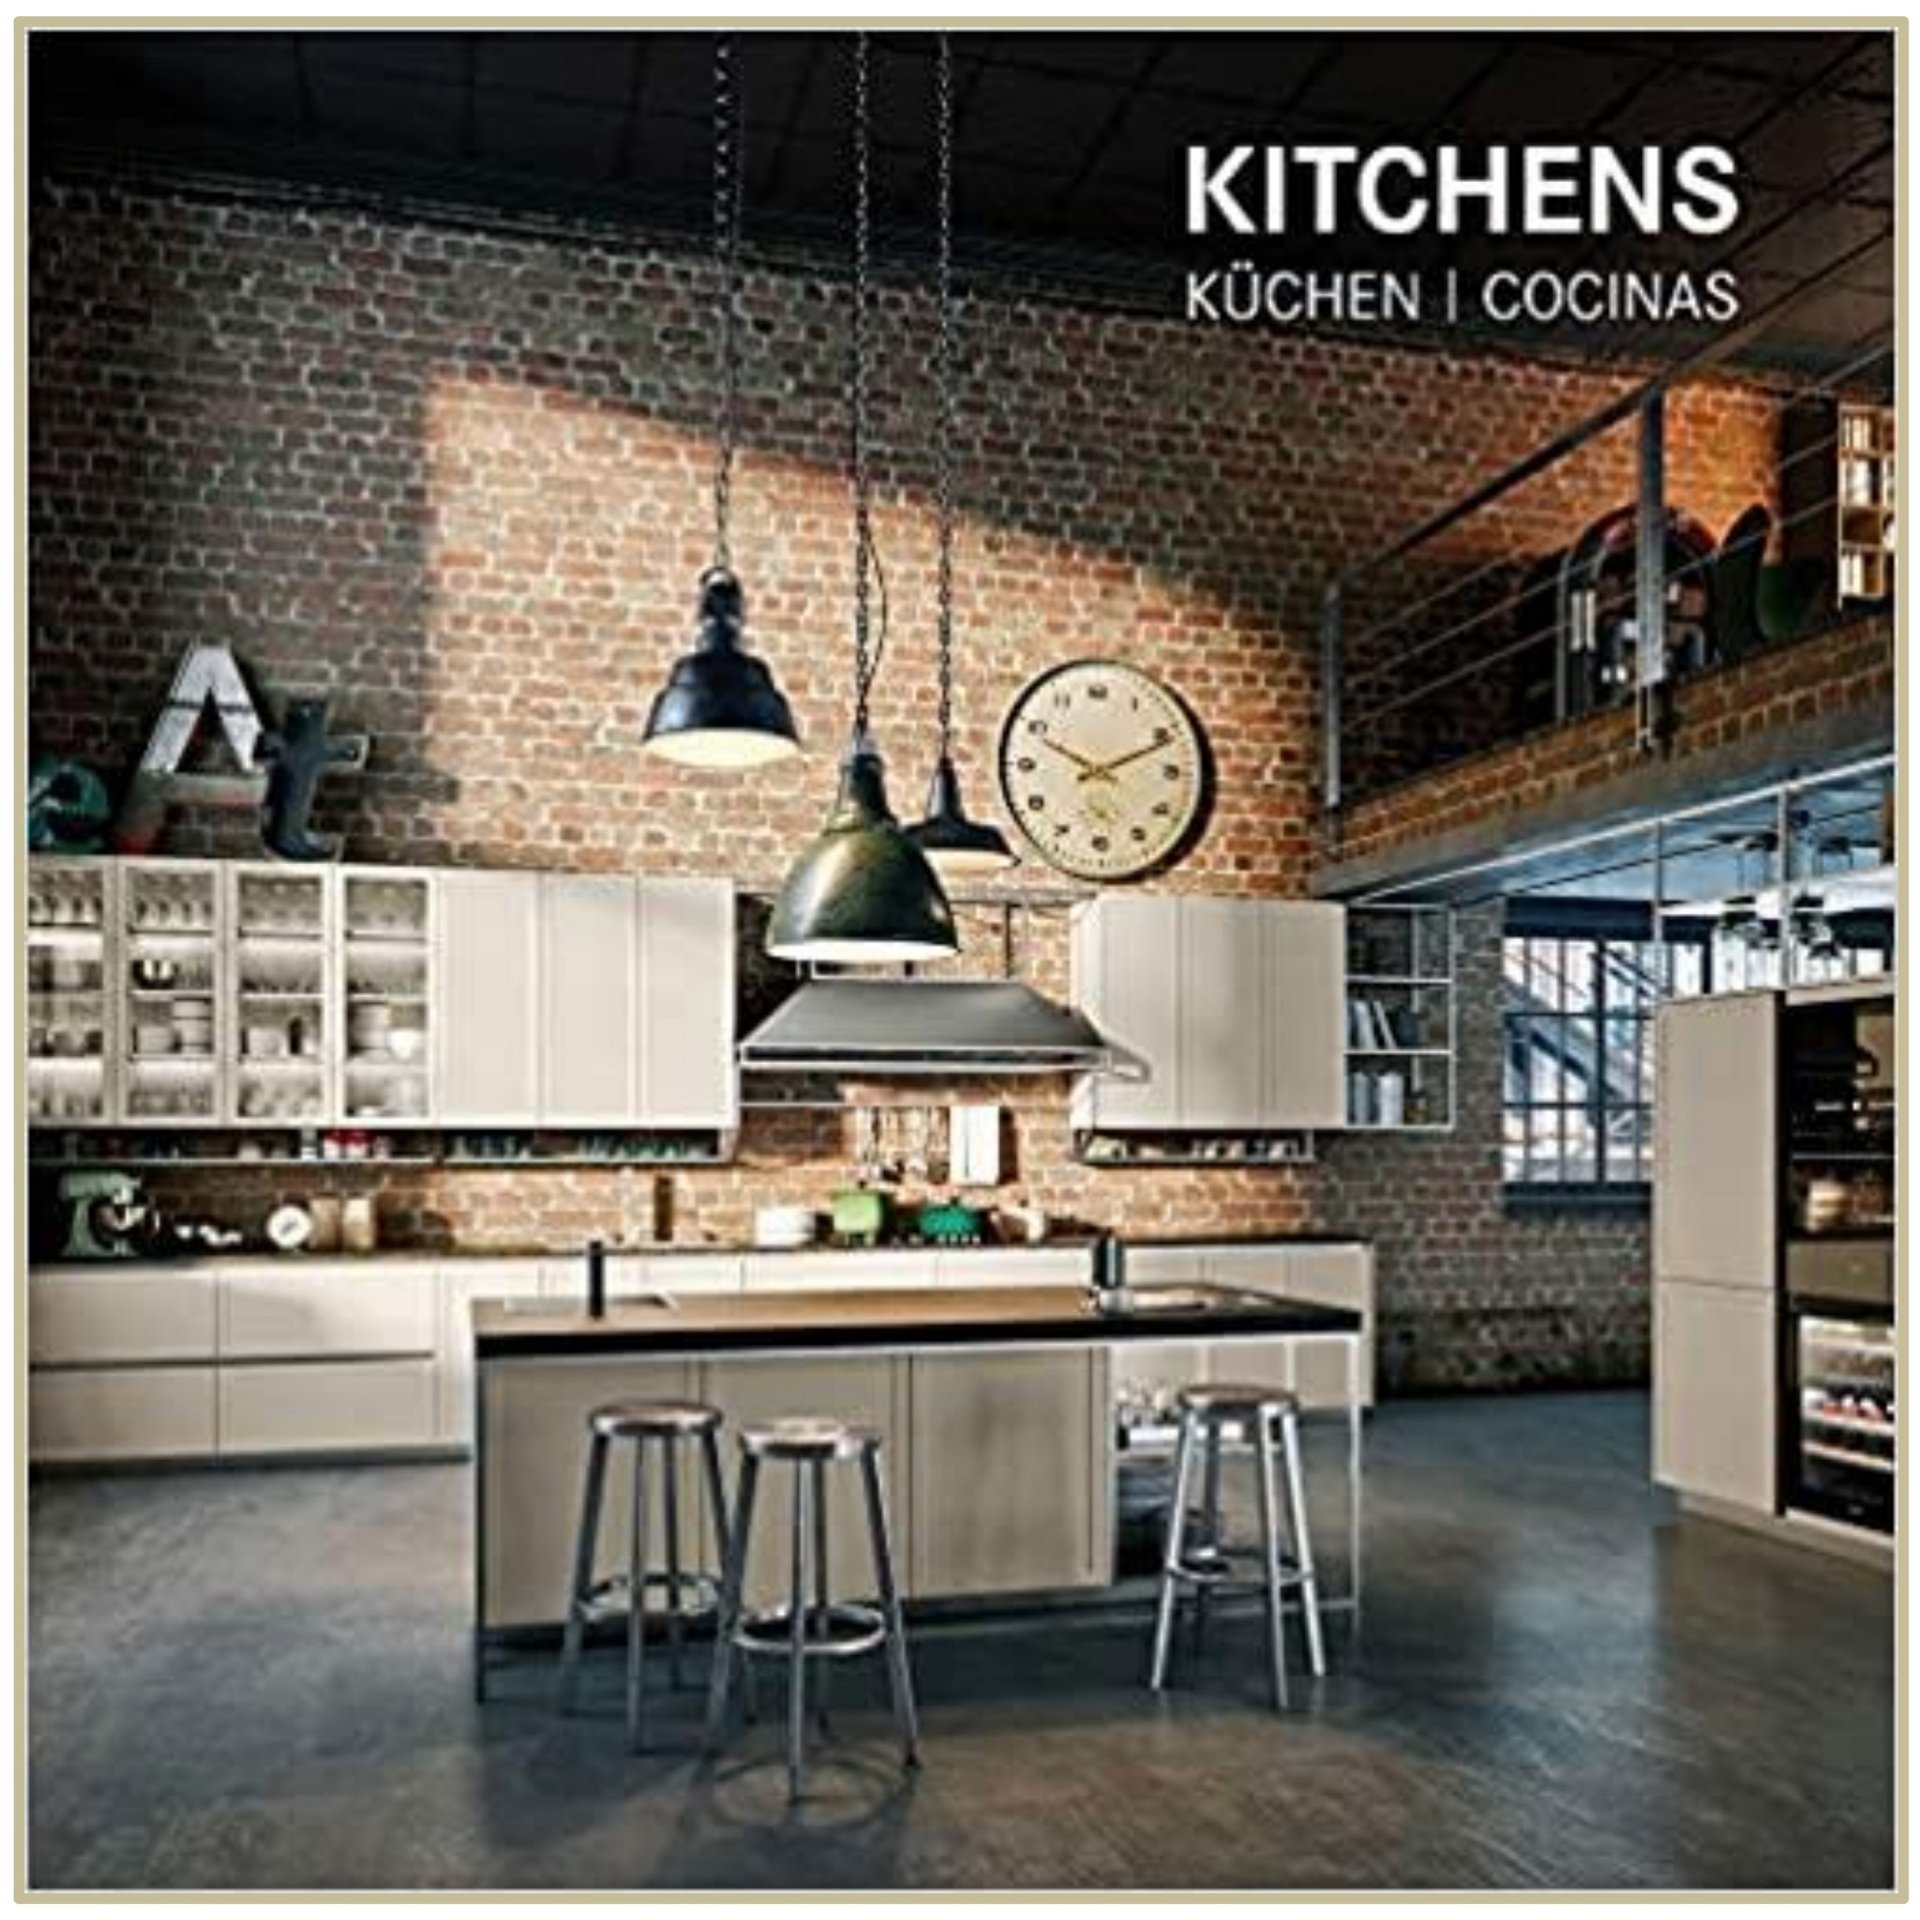 Kitchens: Architecture Today (Çağdaş Mutfak Tasarımları)